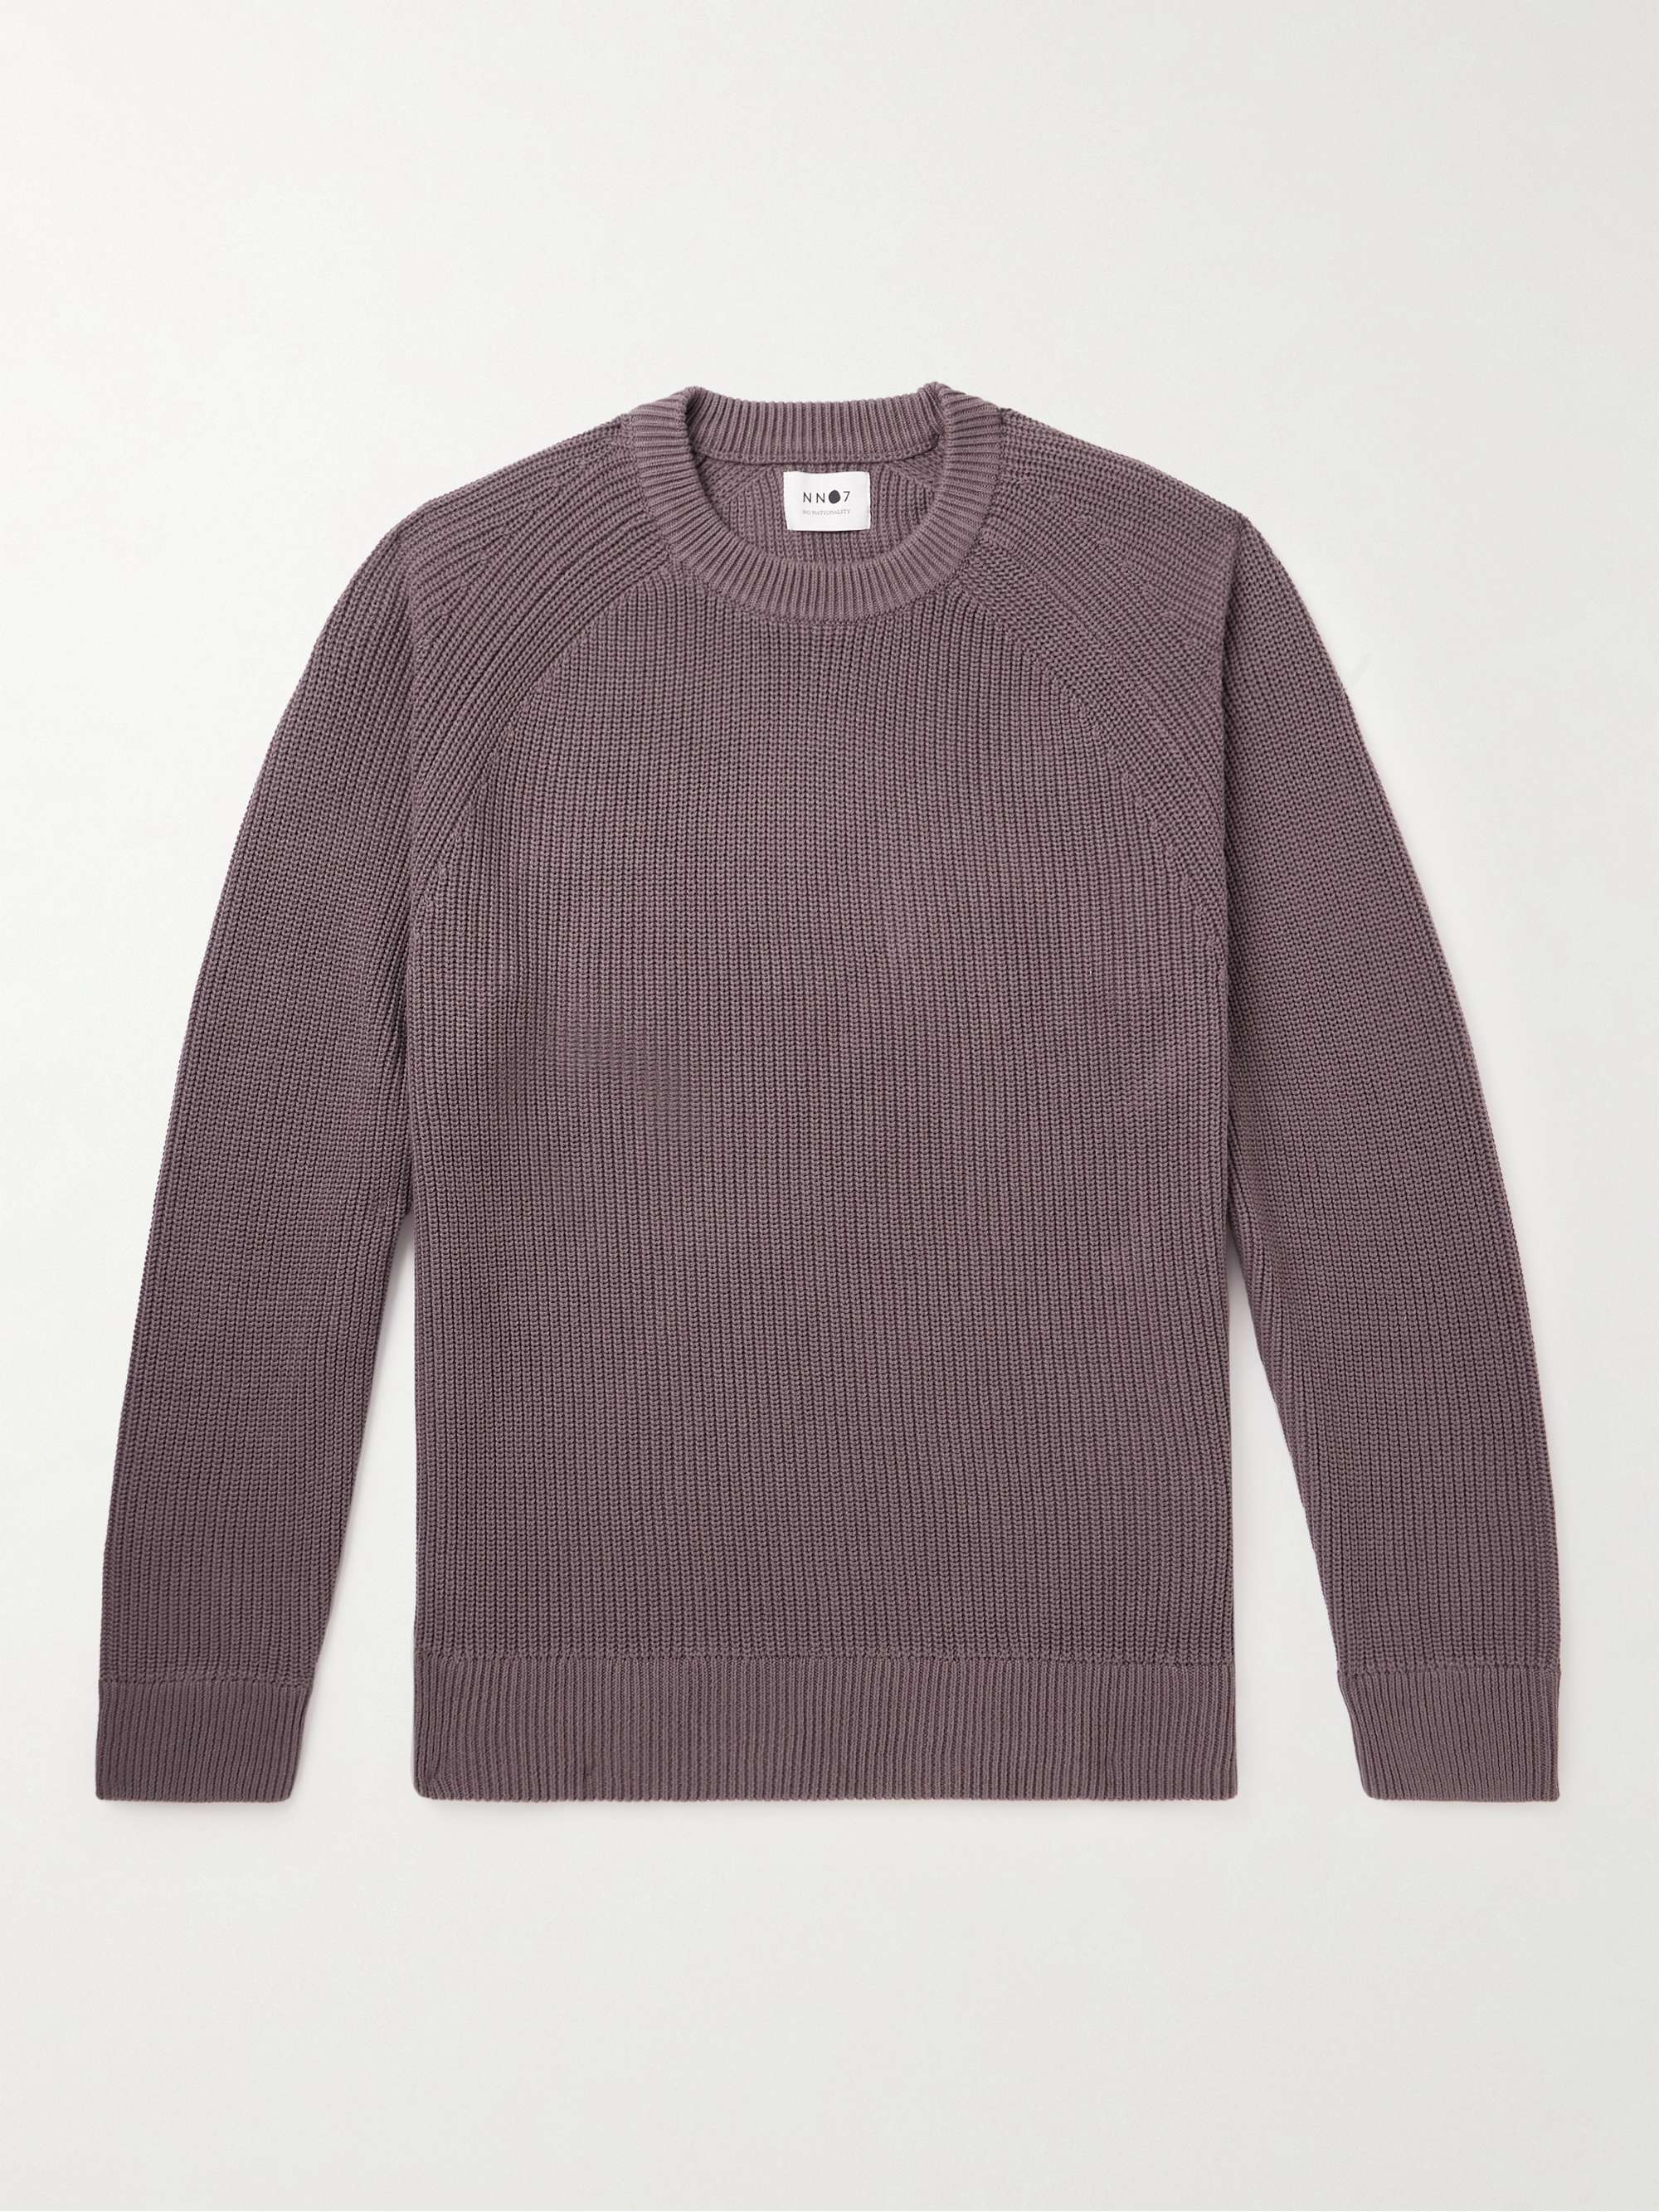 NN07 Jacobo 6470 Ribbed Cotton Sweater for Men | MR PORTER